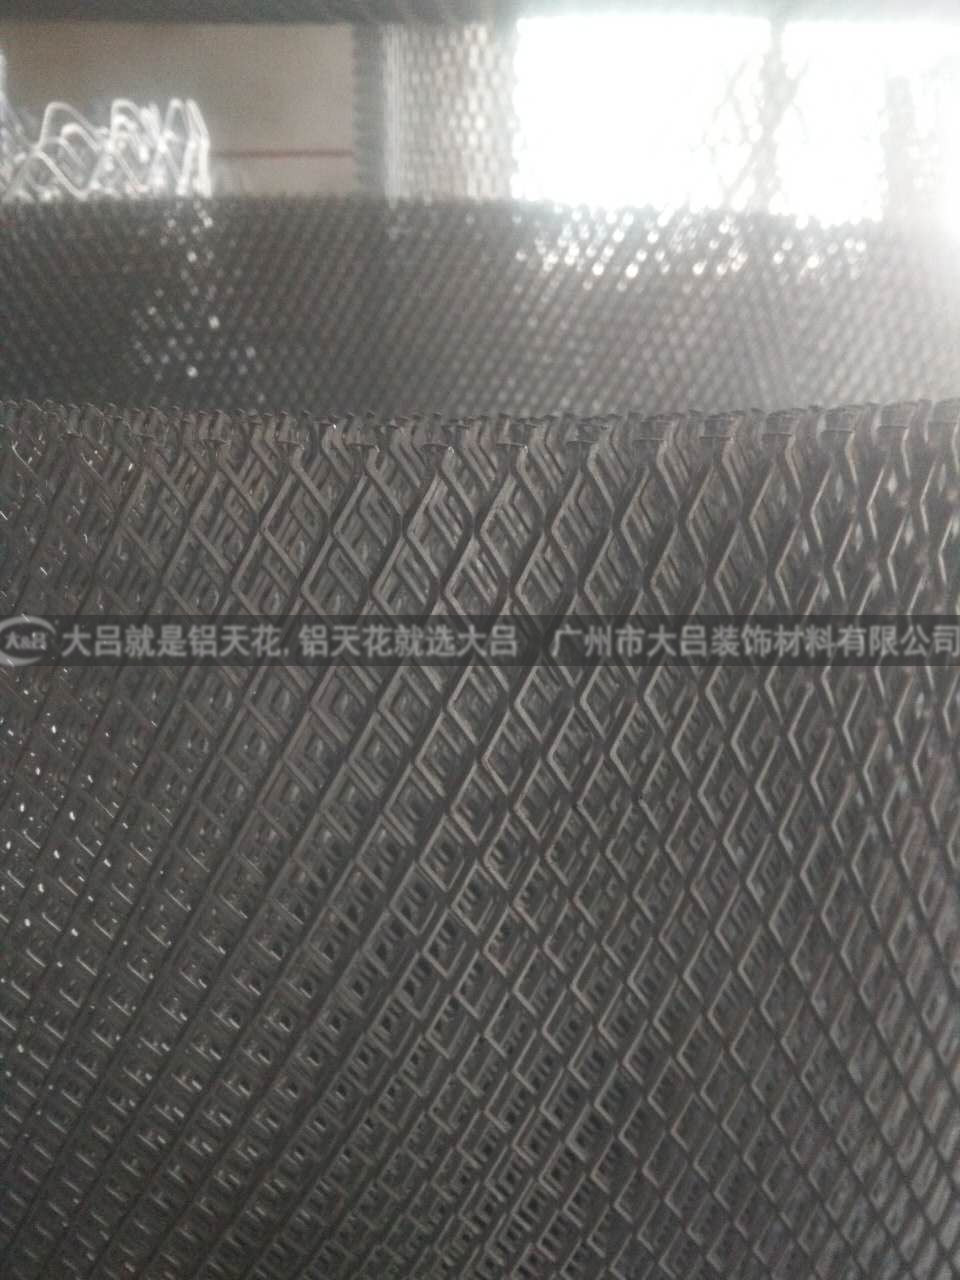 按需定制各种样式菱形孔铝合金拉网 铝拉伸网板 铝扩张网板